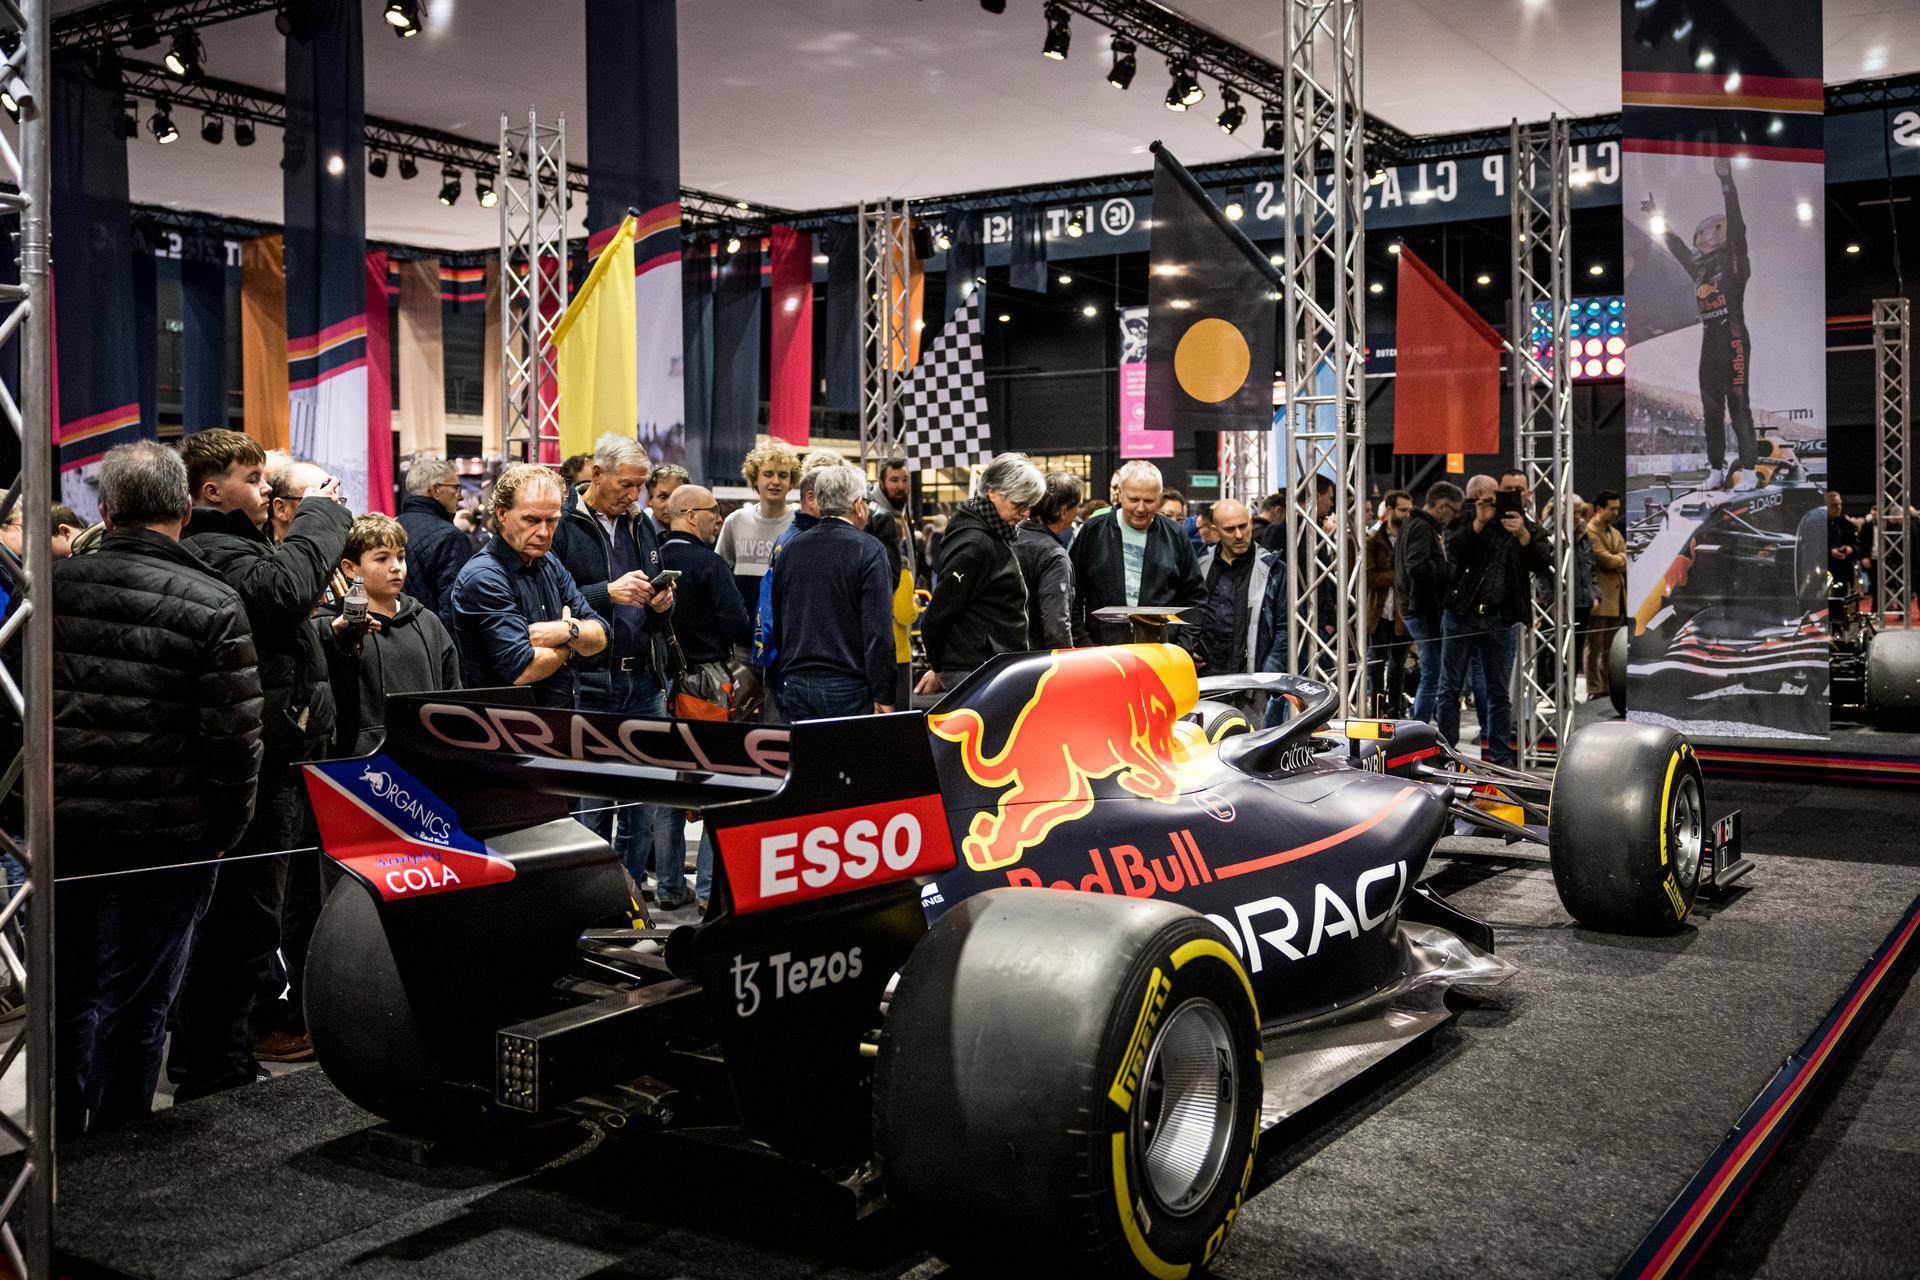 Red Bull Formule 1 wagen omgeven door mensen tijdens het Interclassics evenement in Maastricht